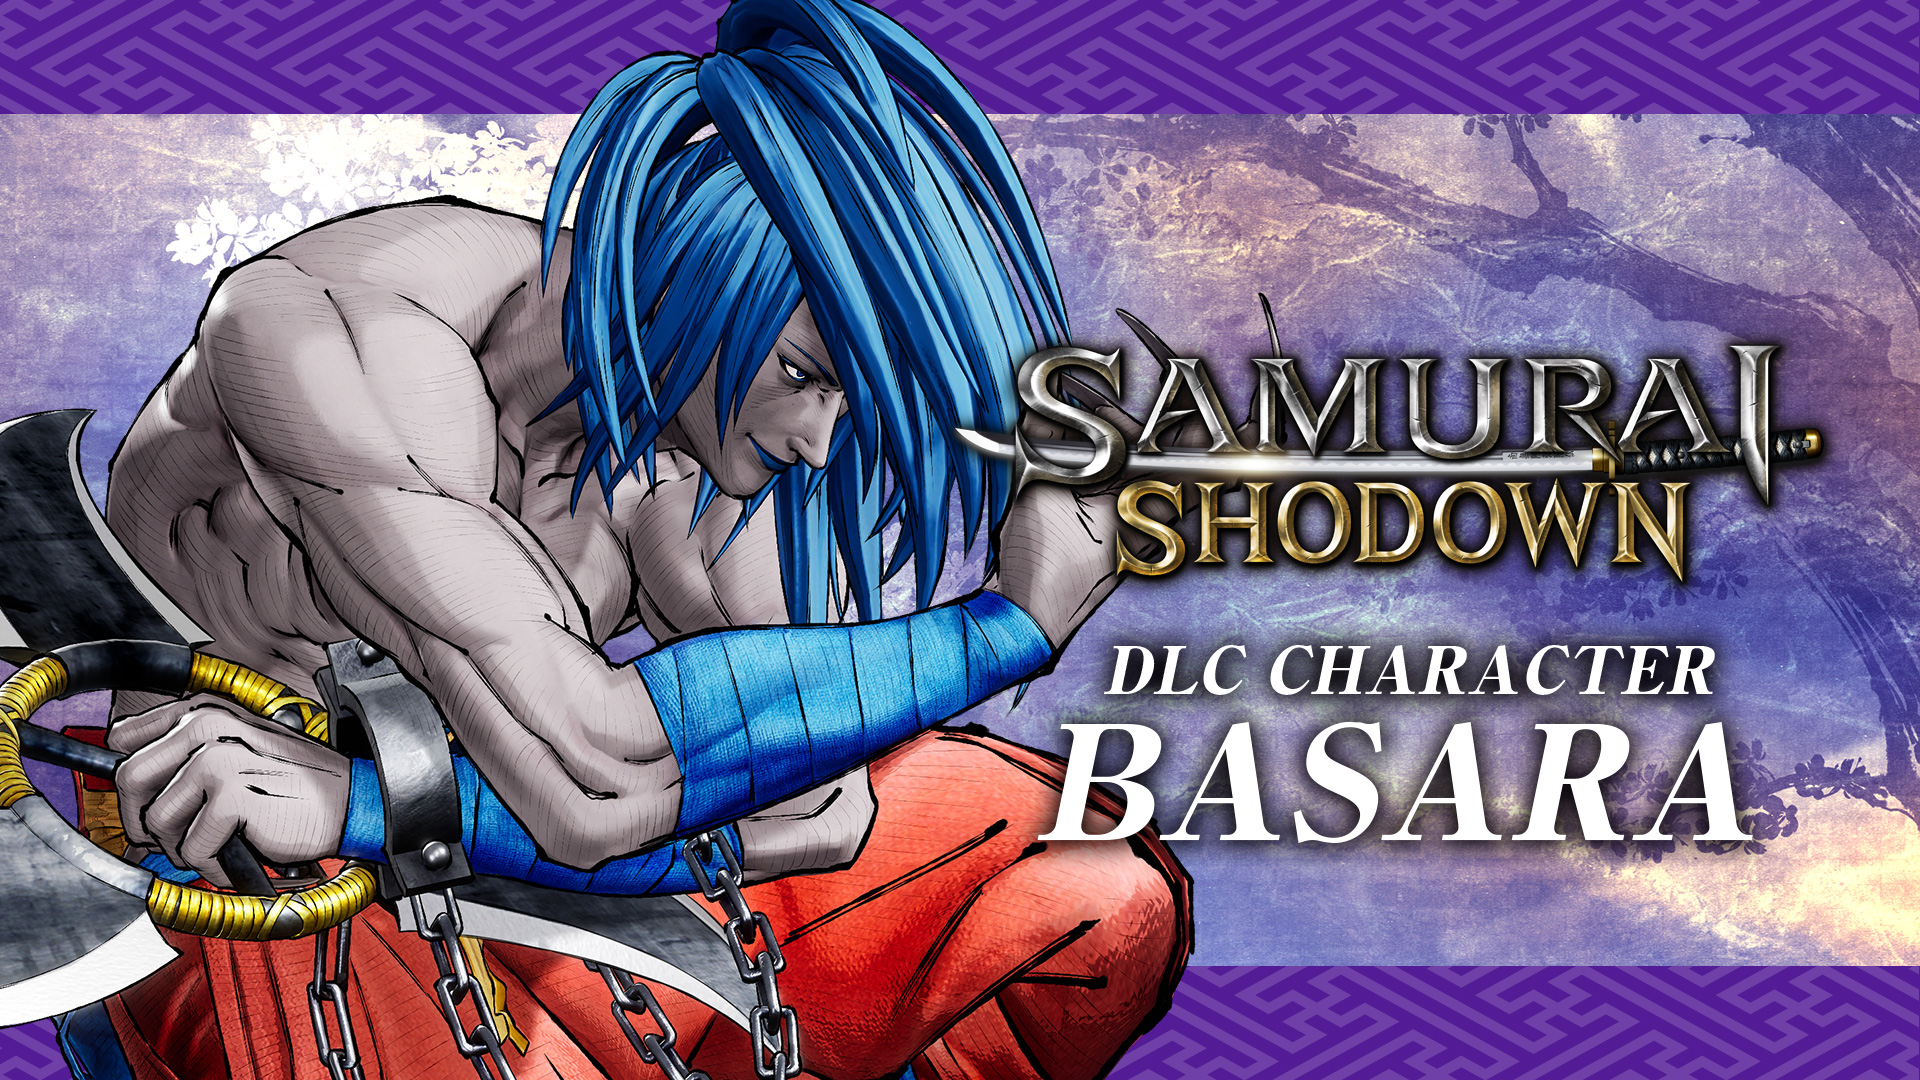 SAMURAI SHODOWN: CHARACTER "BASARA"